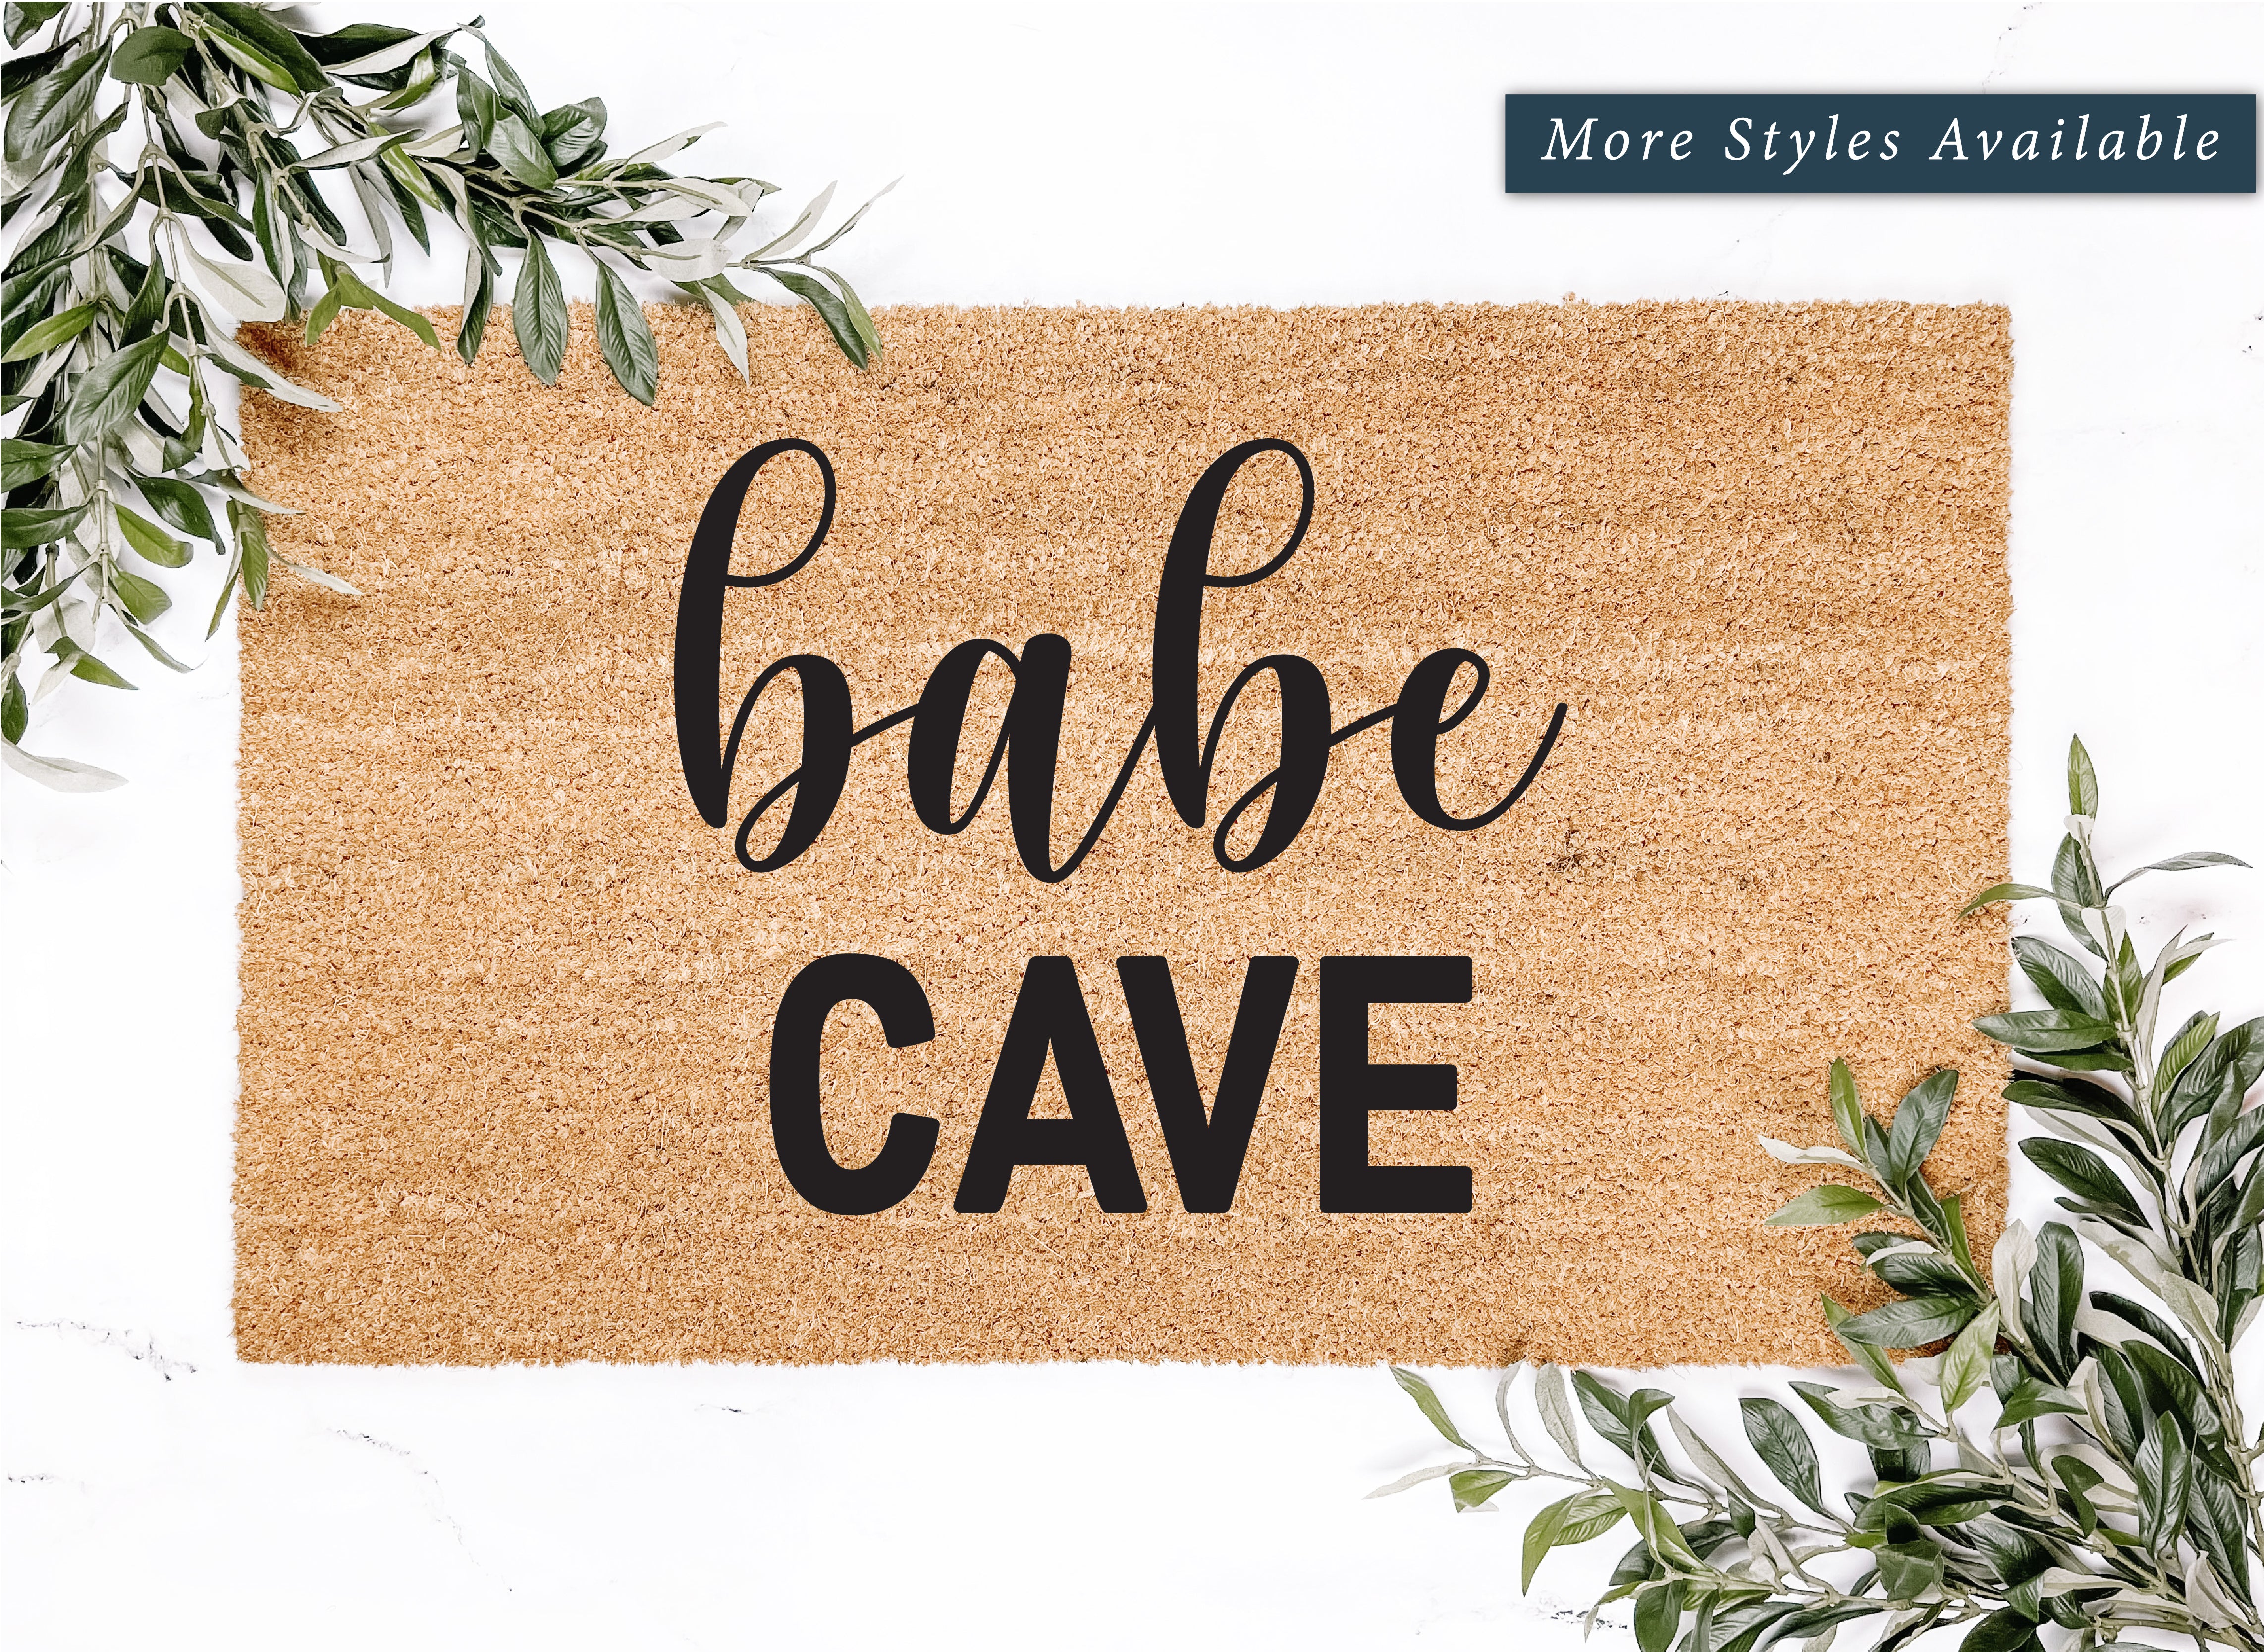 Babe Cave Doormat